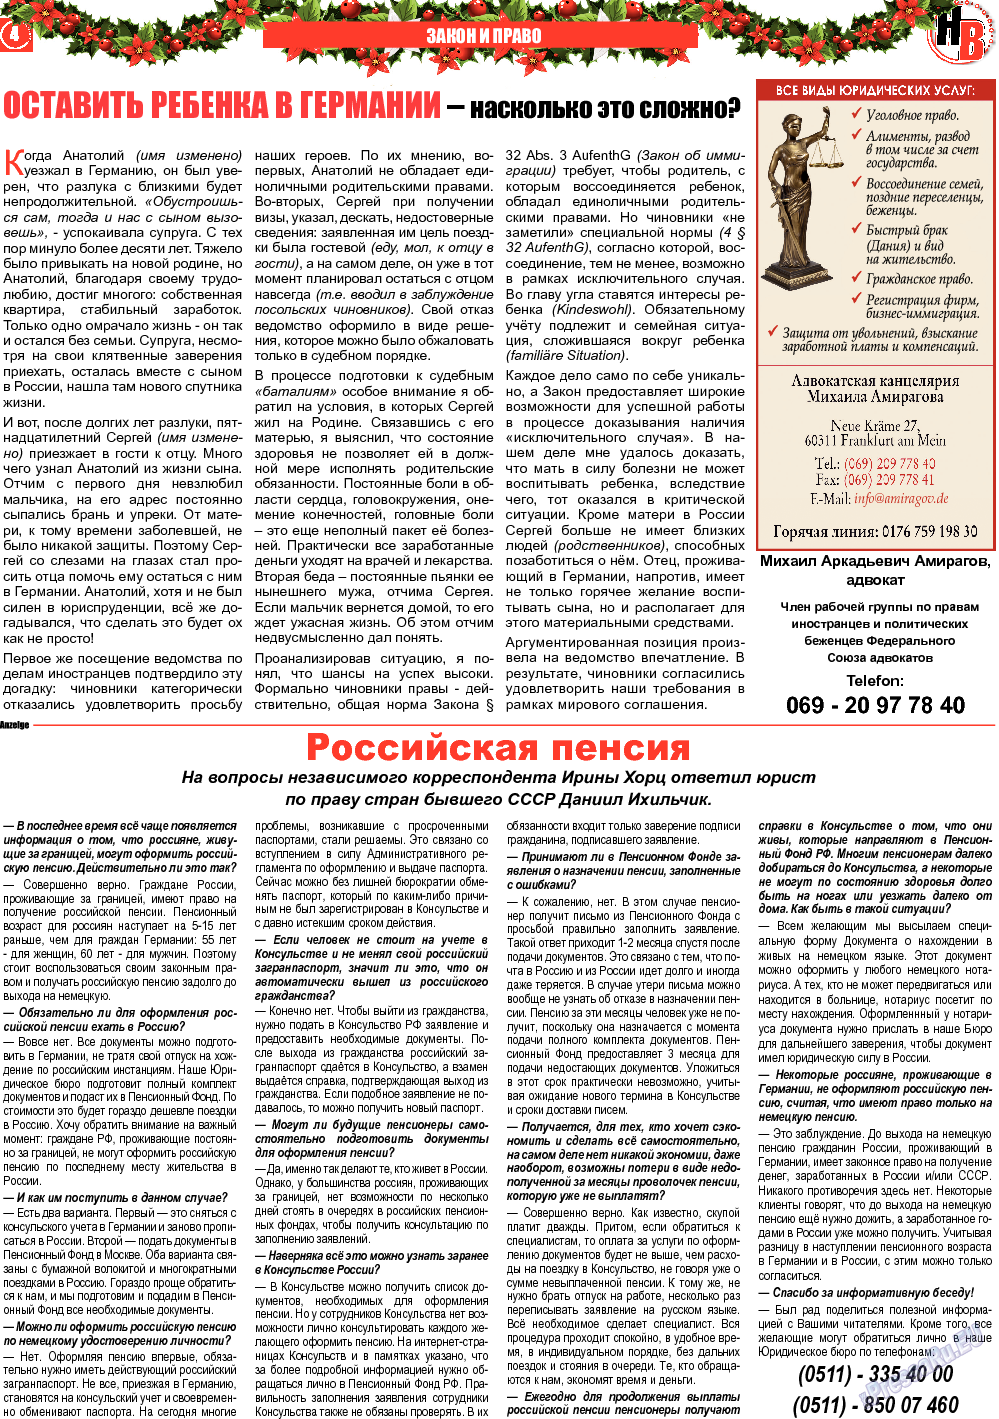 Наше время, газета. 2013 №12 стр.4